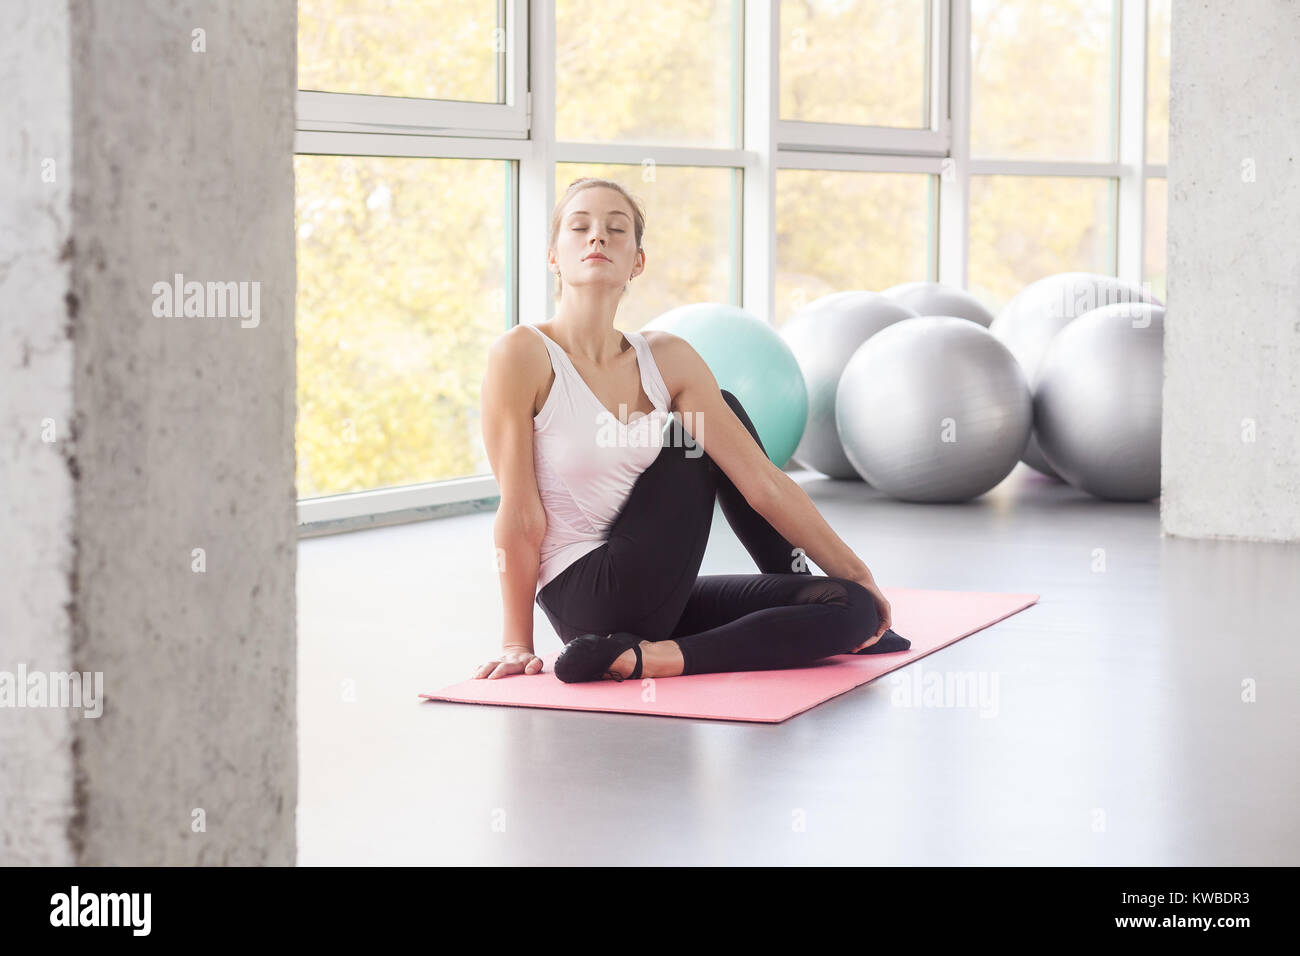 Kuh Gesicht, Vorbereitung der Körperhaltung. Frau Yoga, relaxating, geschlossenen Augen. Studio shot Stockfoto